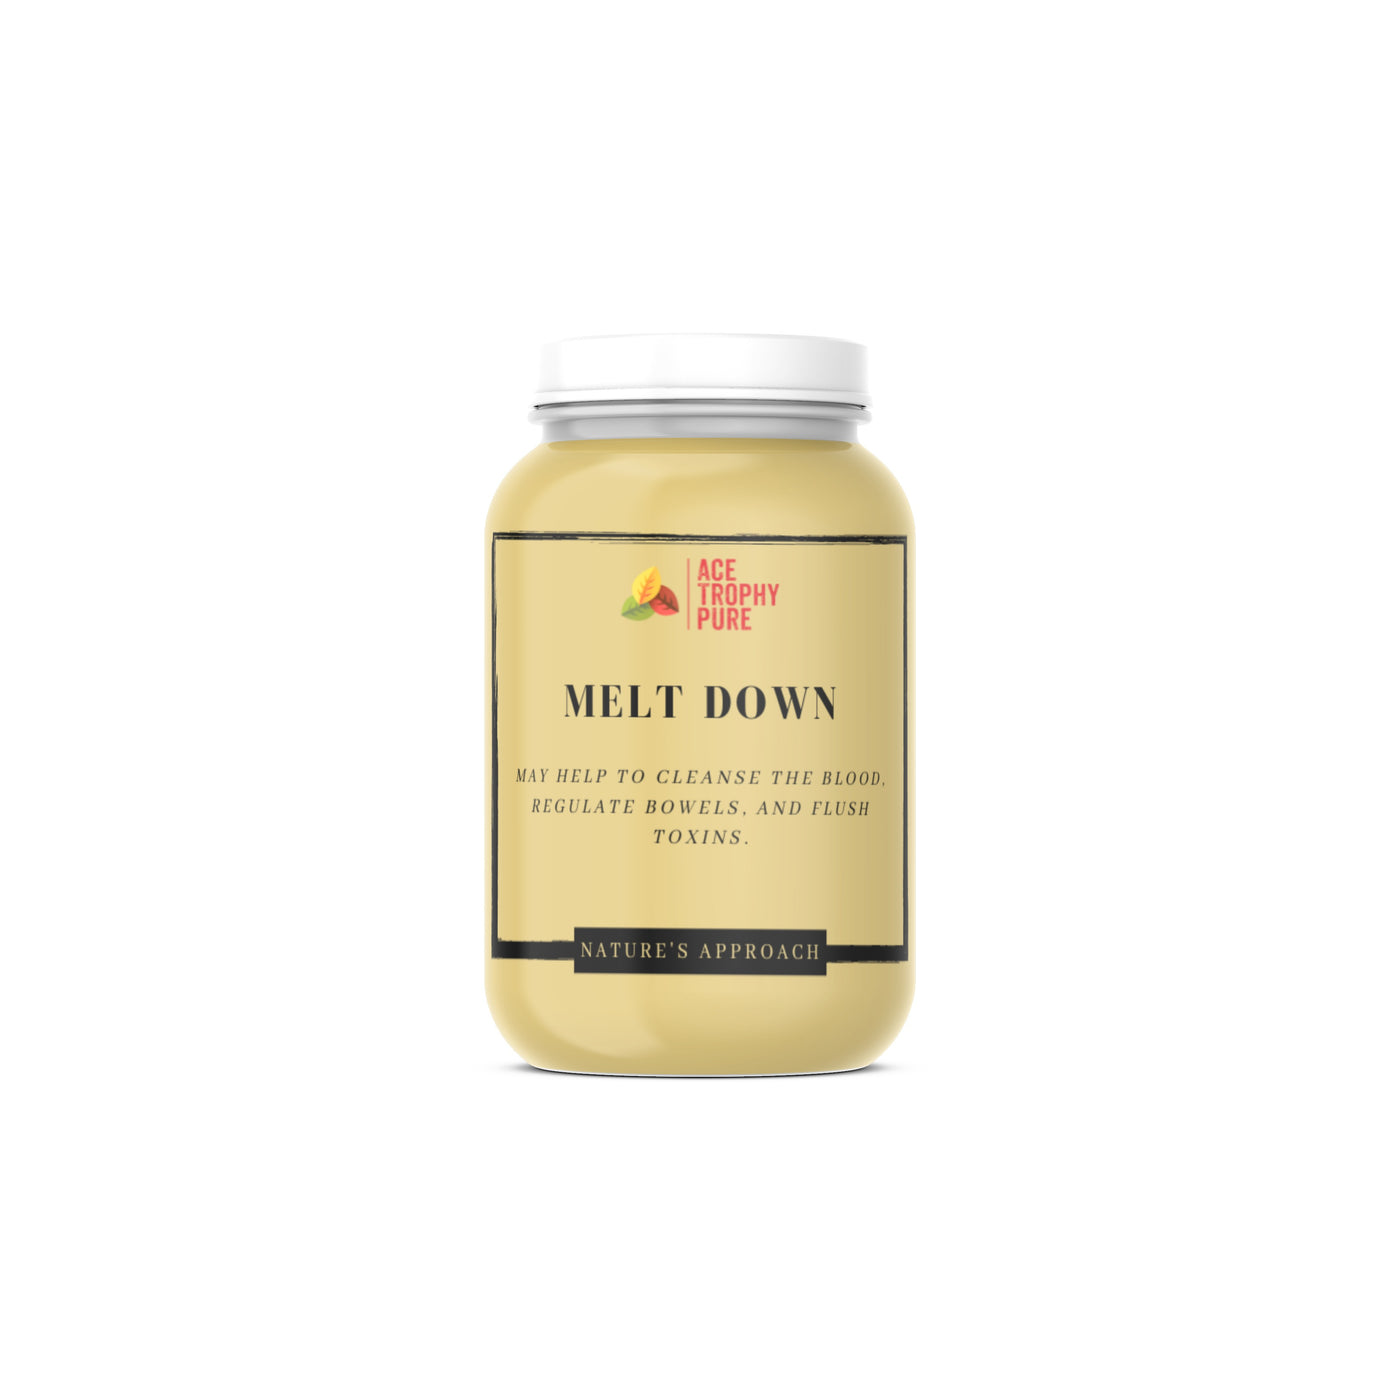 Melt Down (Preconception Detox) – Ace Trophy Pure